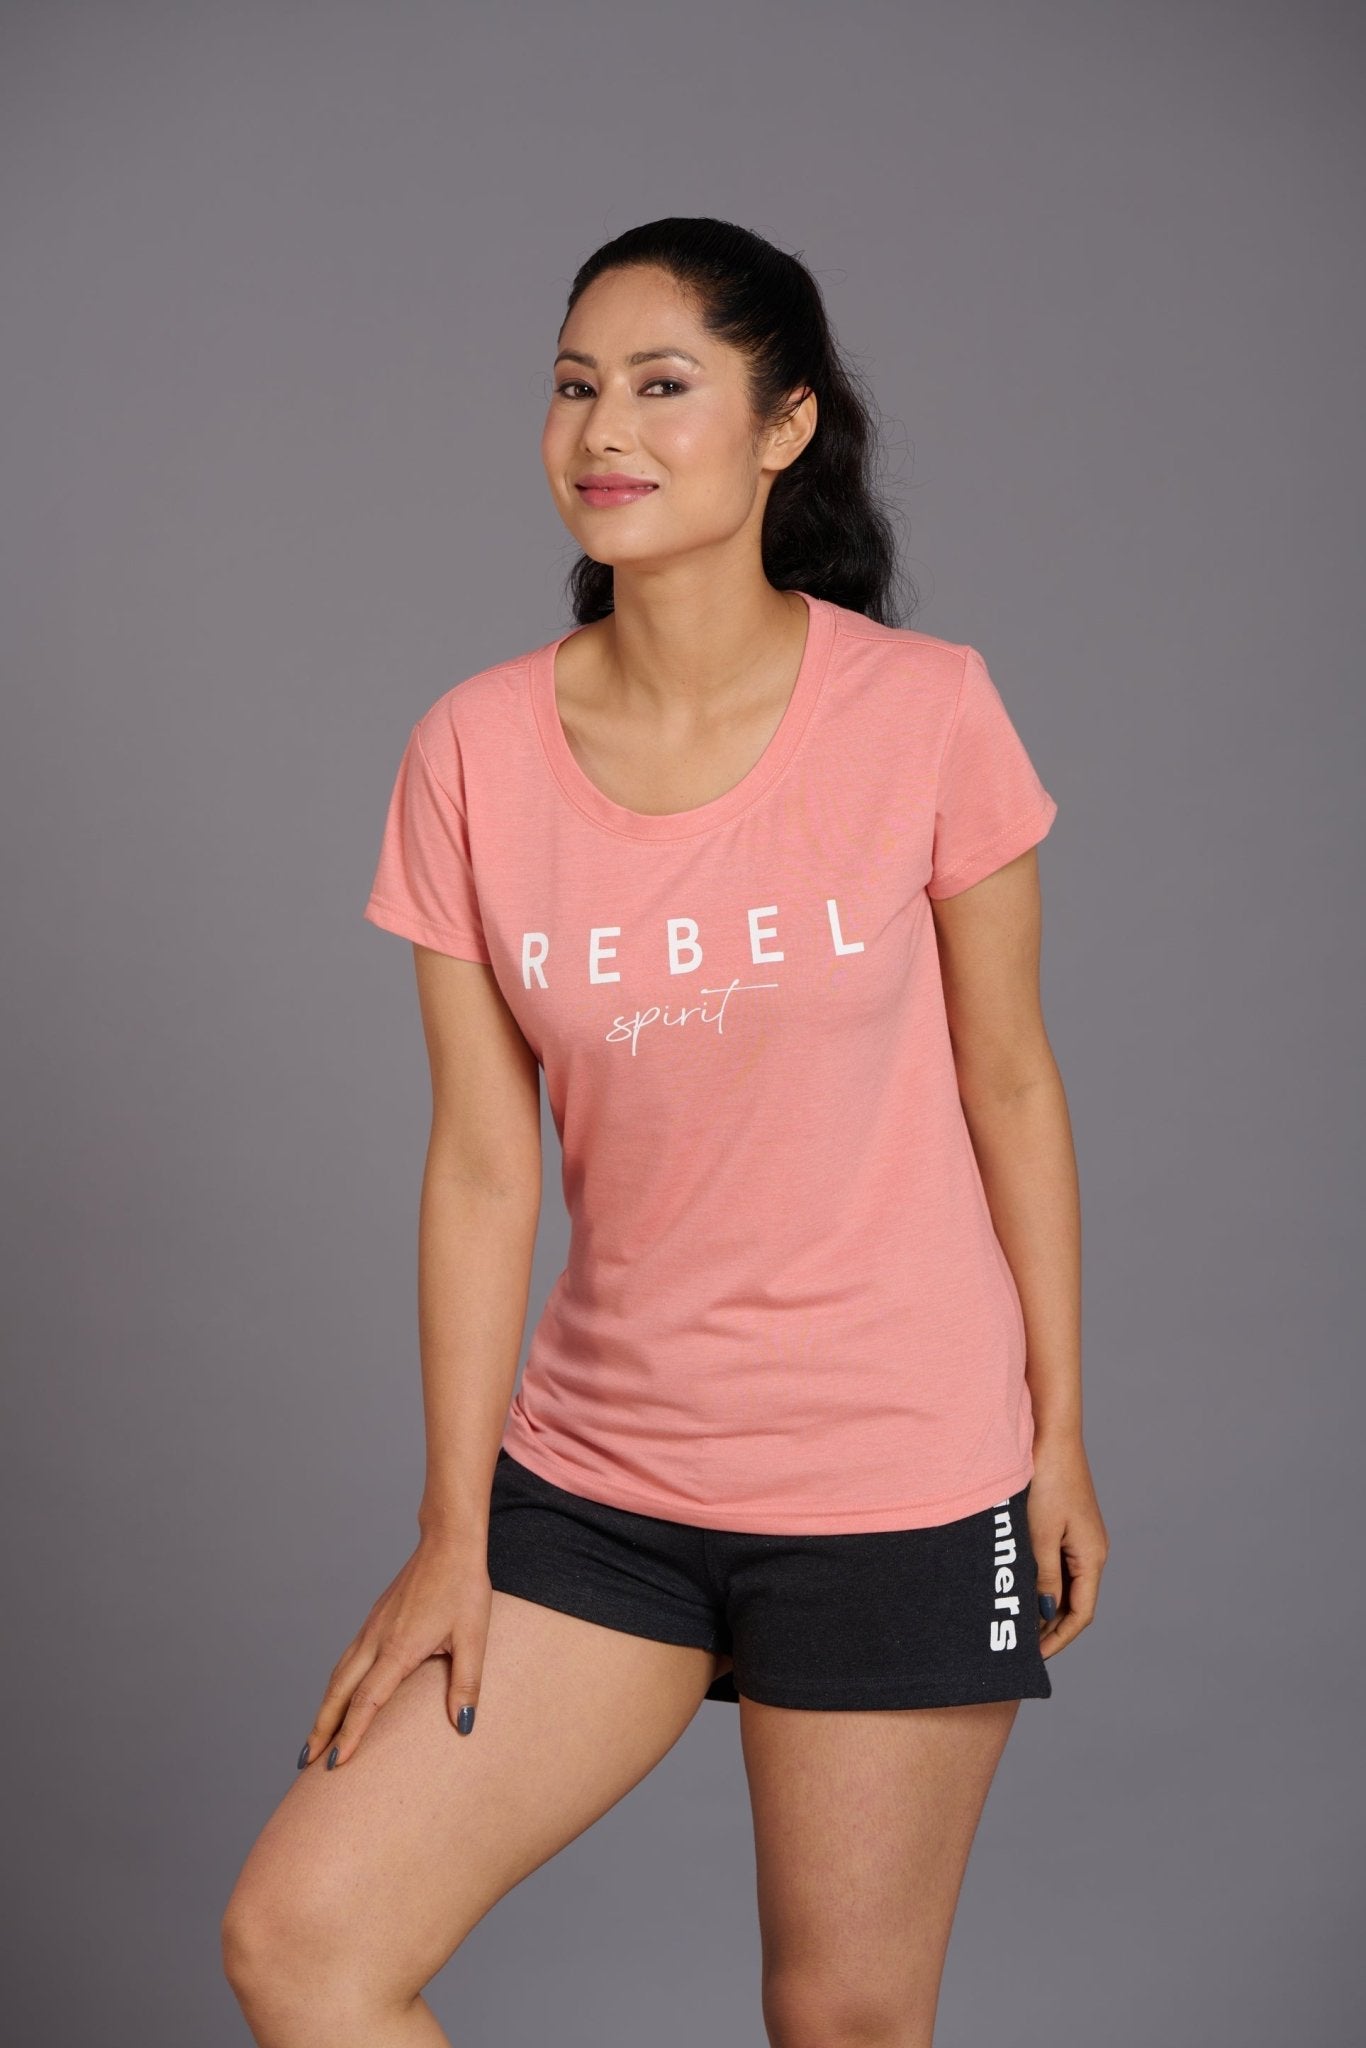 Rebel Spirit Printed Oversized T-Shirt for Women - Go Devil